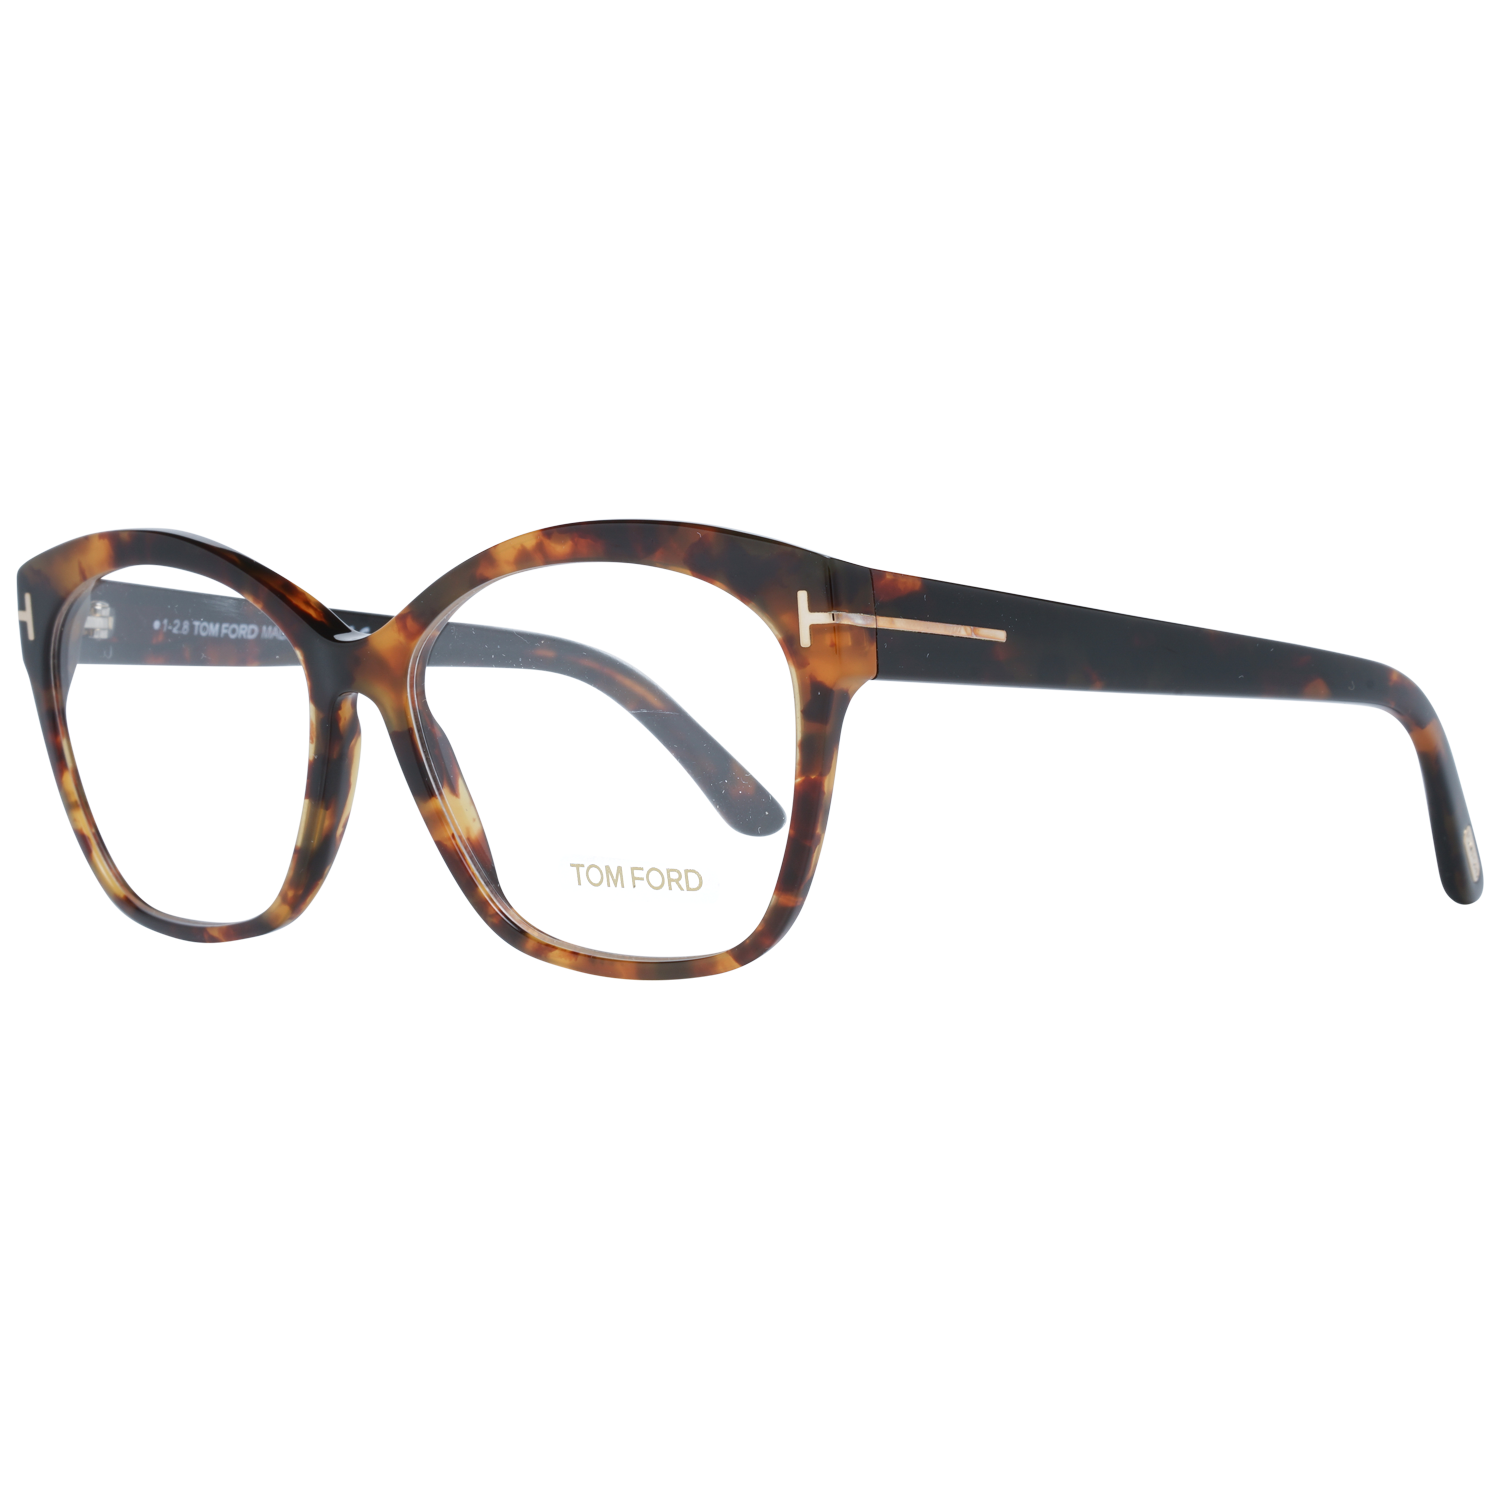 Tom Ford Eyeglasses Tom Ford Optical Frame FT5435 056 57 Eyeglasses Eyewear UK USA Australia 